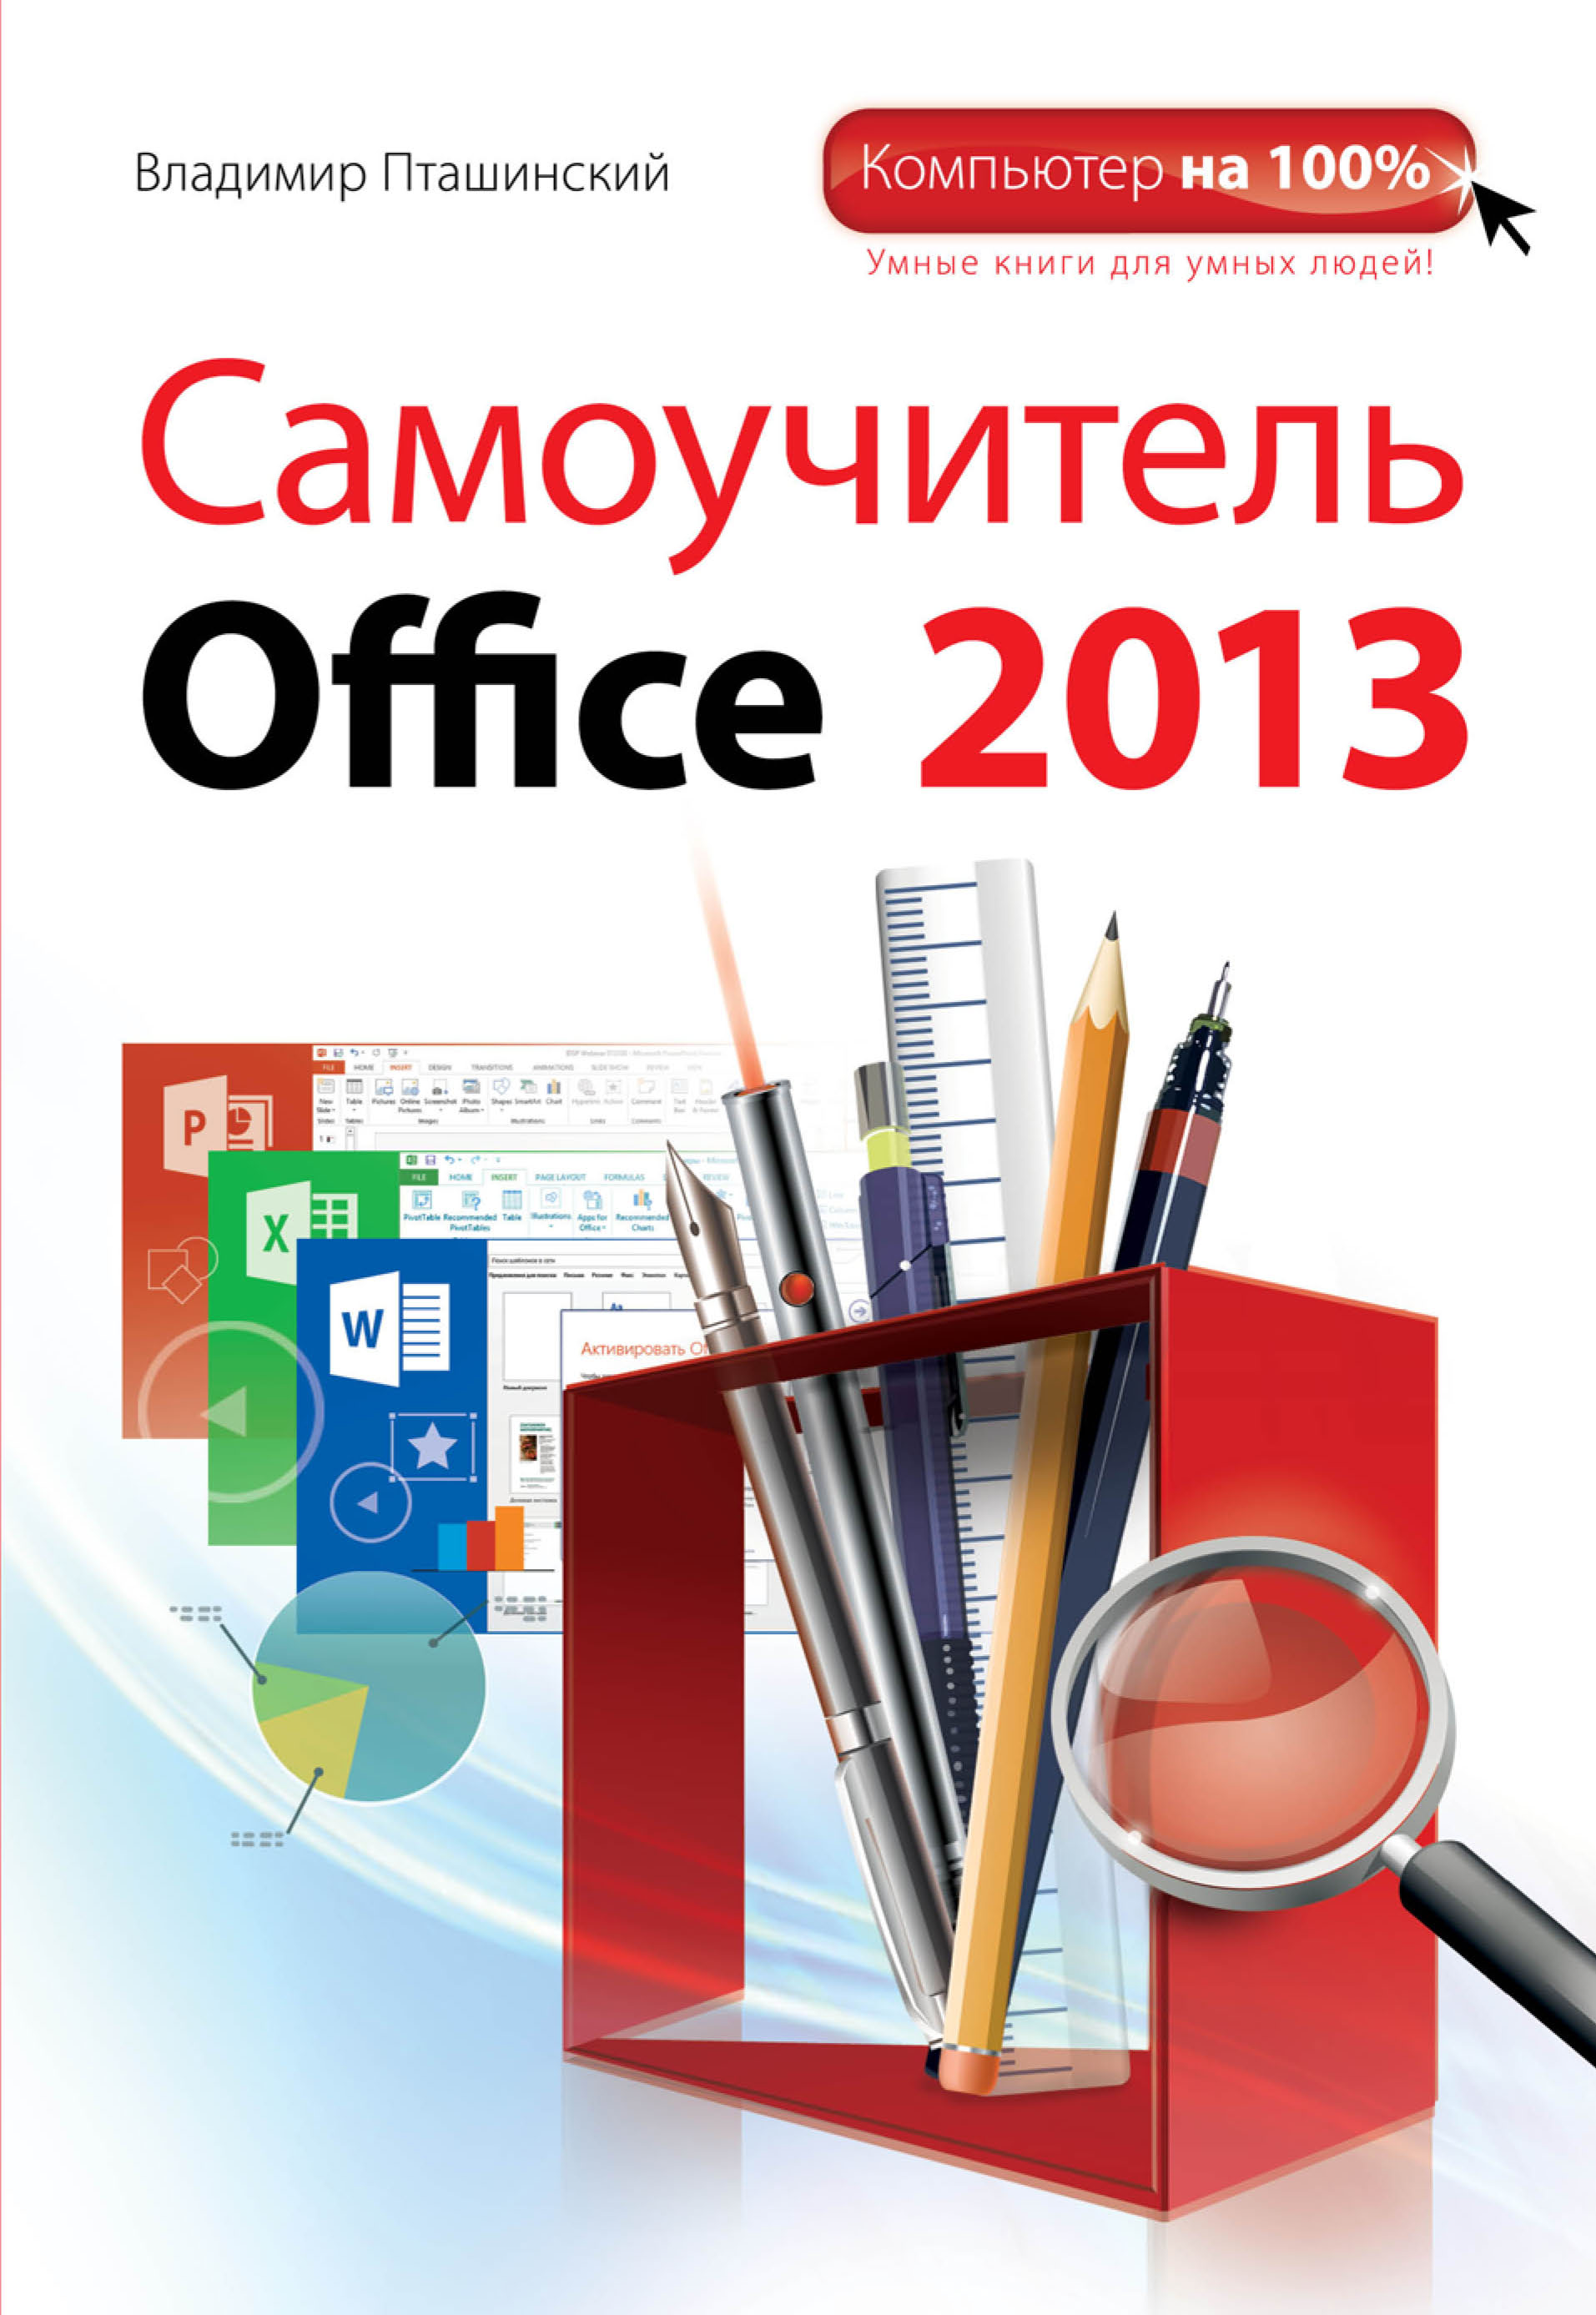 Книга Компьютер на 100% Самоучитель Office 2013 созданная Владимир Пташинский может относится к жанру программы. Стоимость электронной книги Самоучитель Office 2013 с идентификатором 7389366 составляет 219.00 руб.